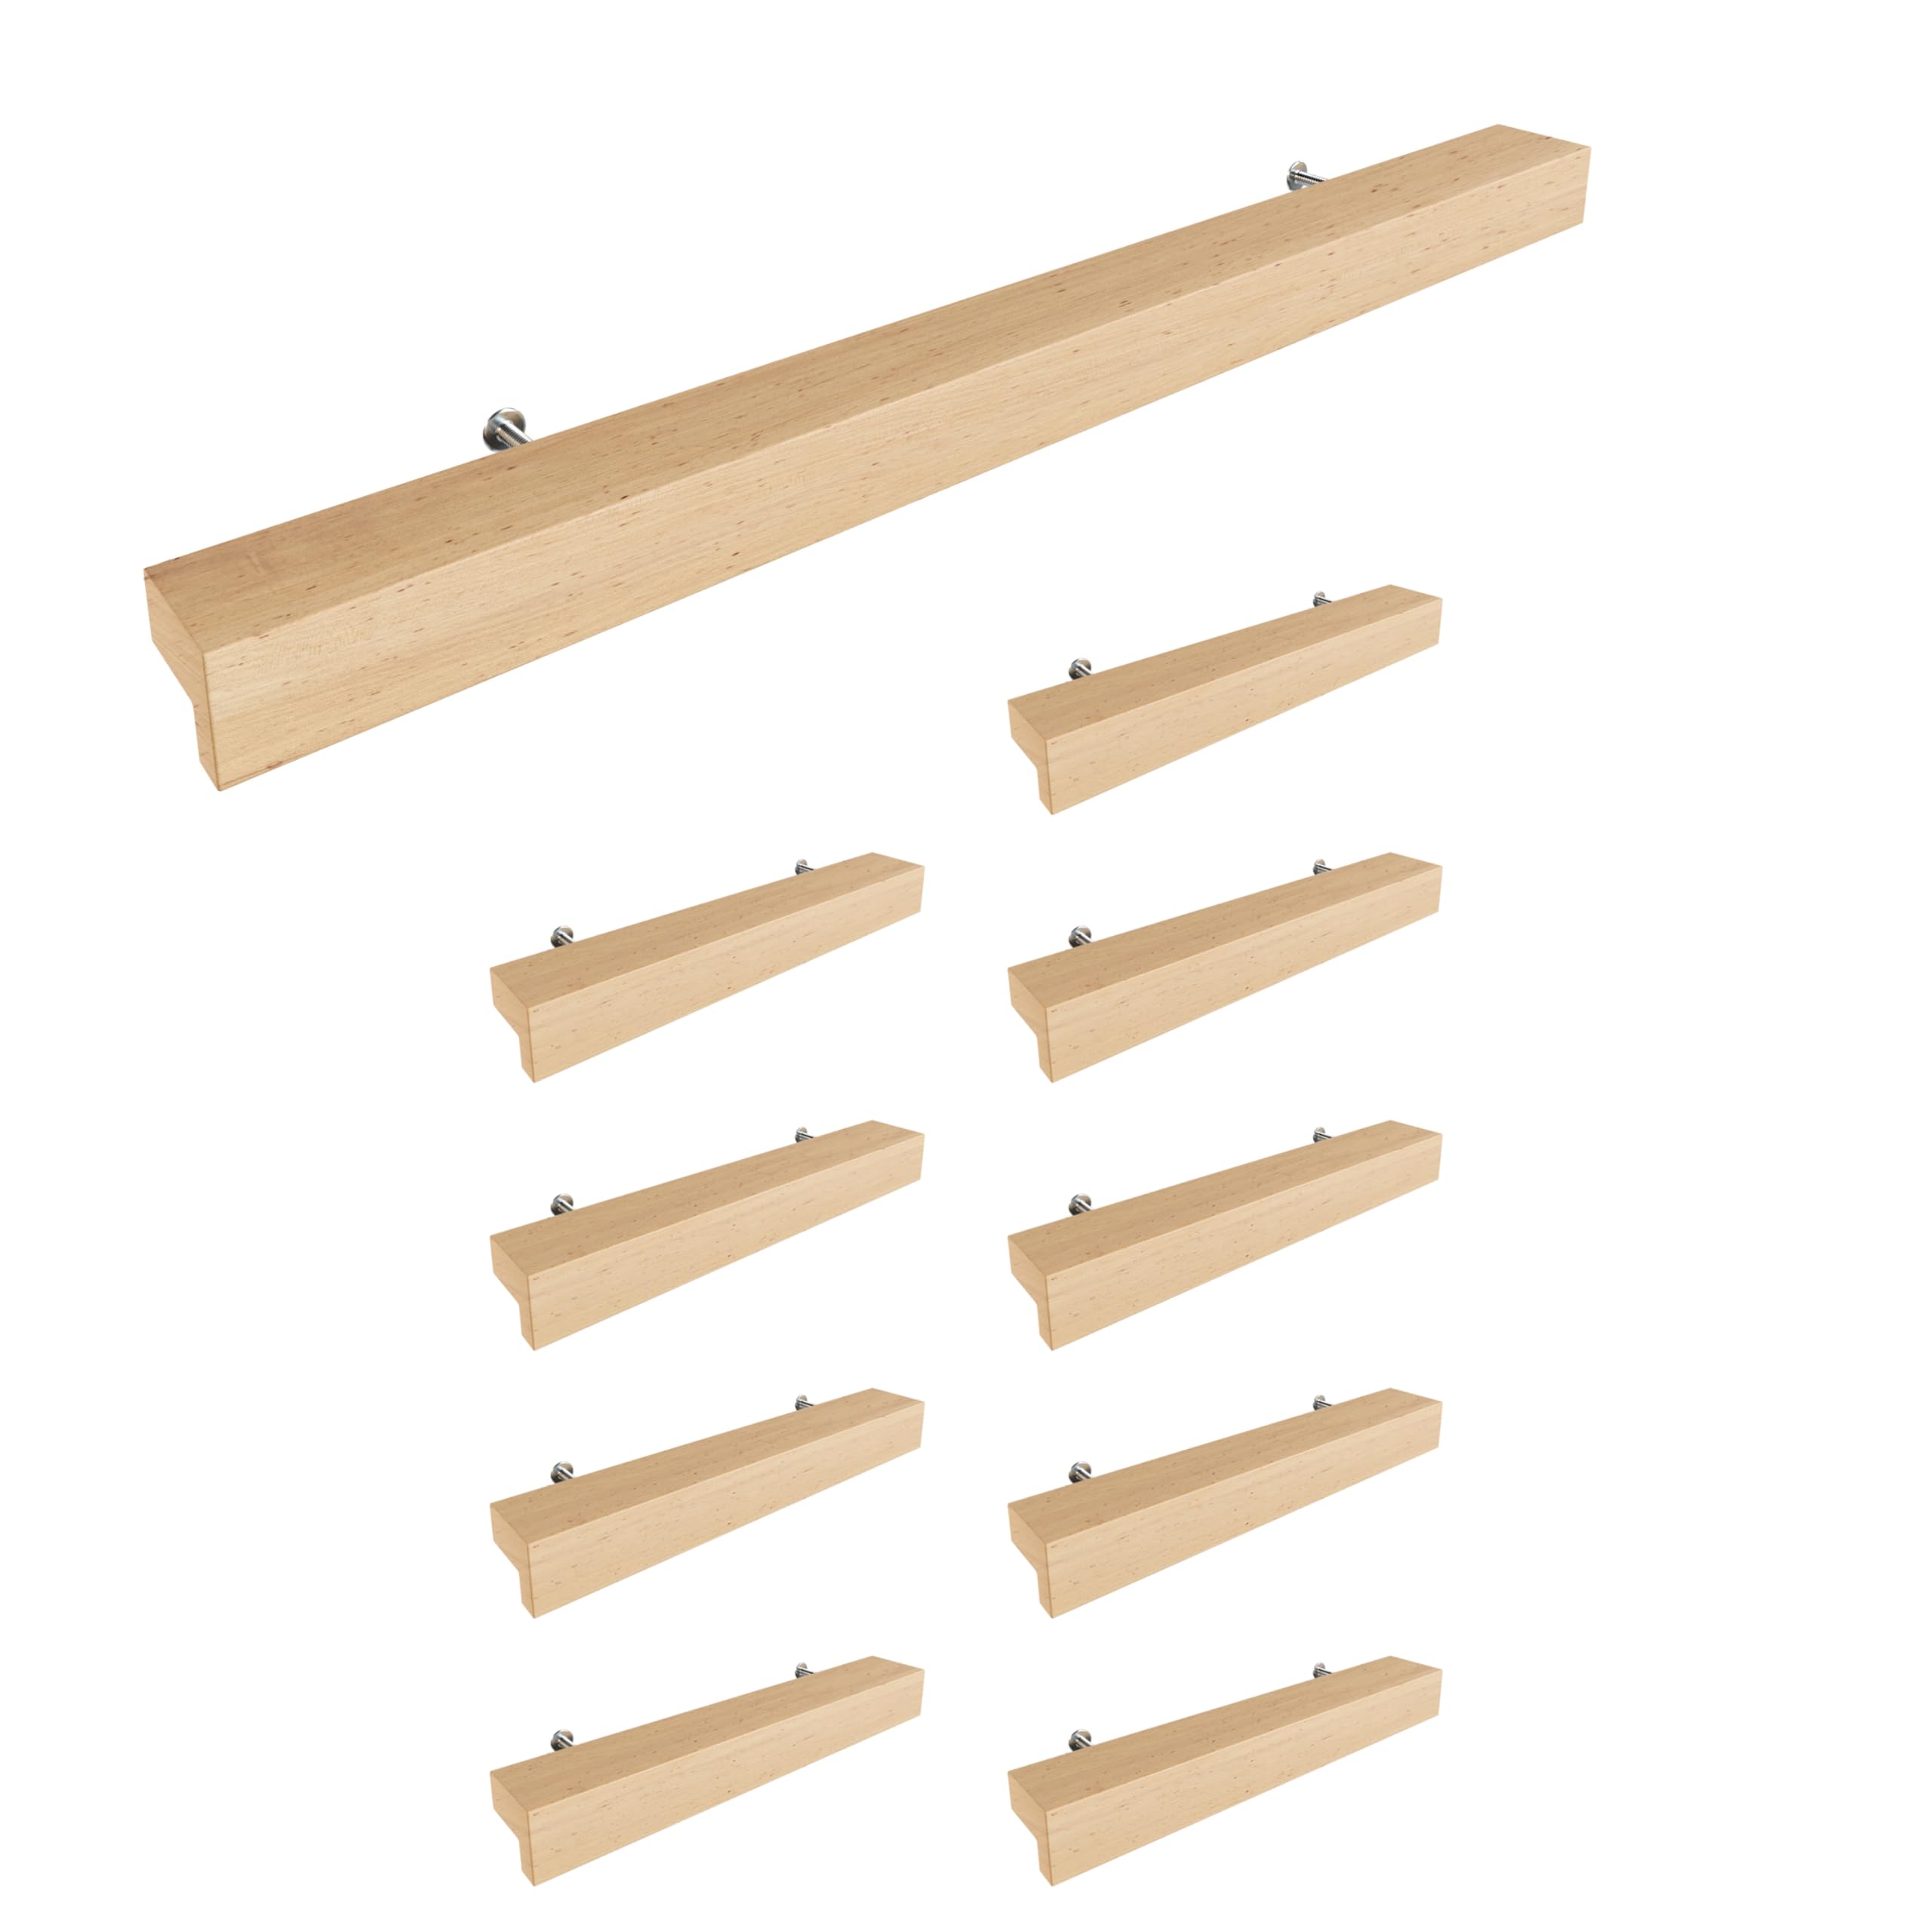 Sossai Holz Möbelgriffe aus Buche | GAH01 | Lochabstand 224mm, Länge 304mm, 10 Stück